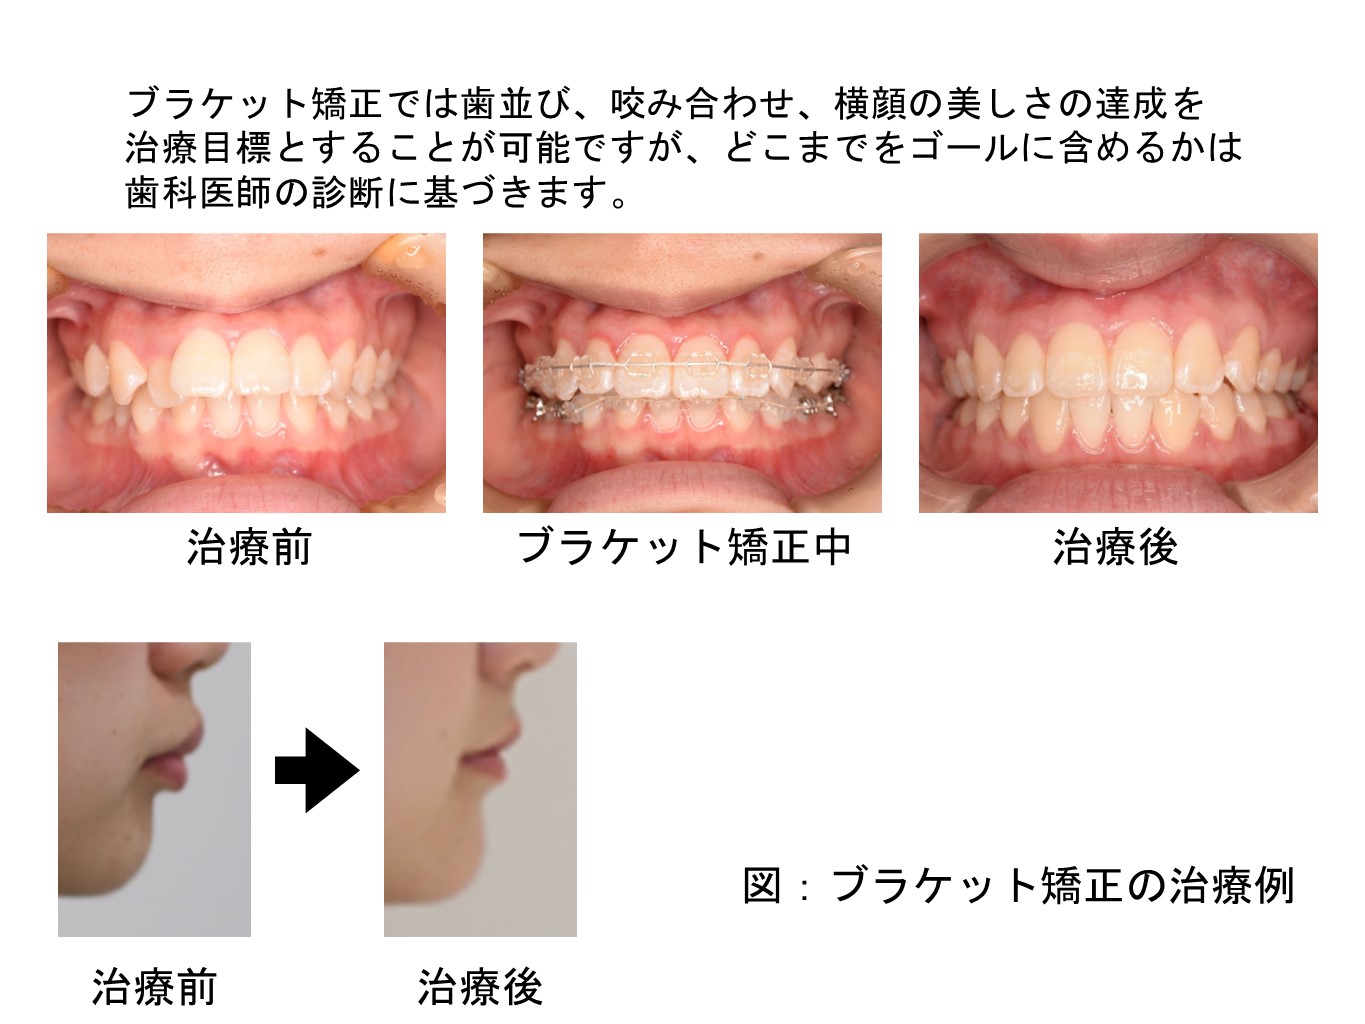 ②相歯良い歯のコンクール2